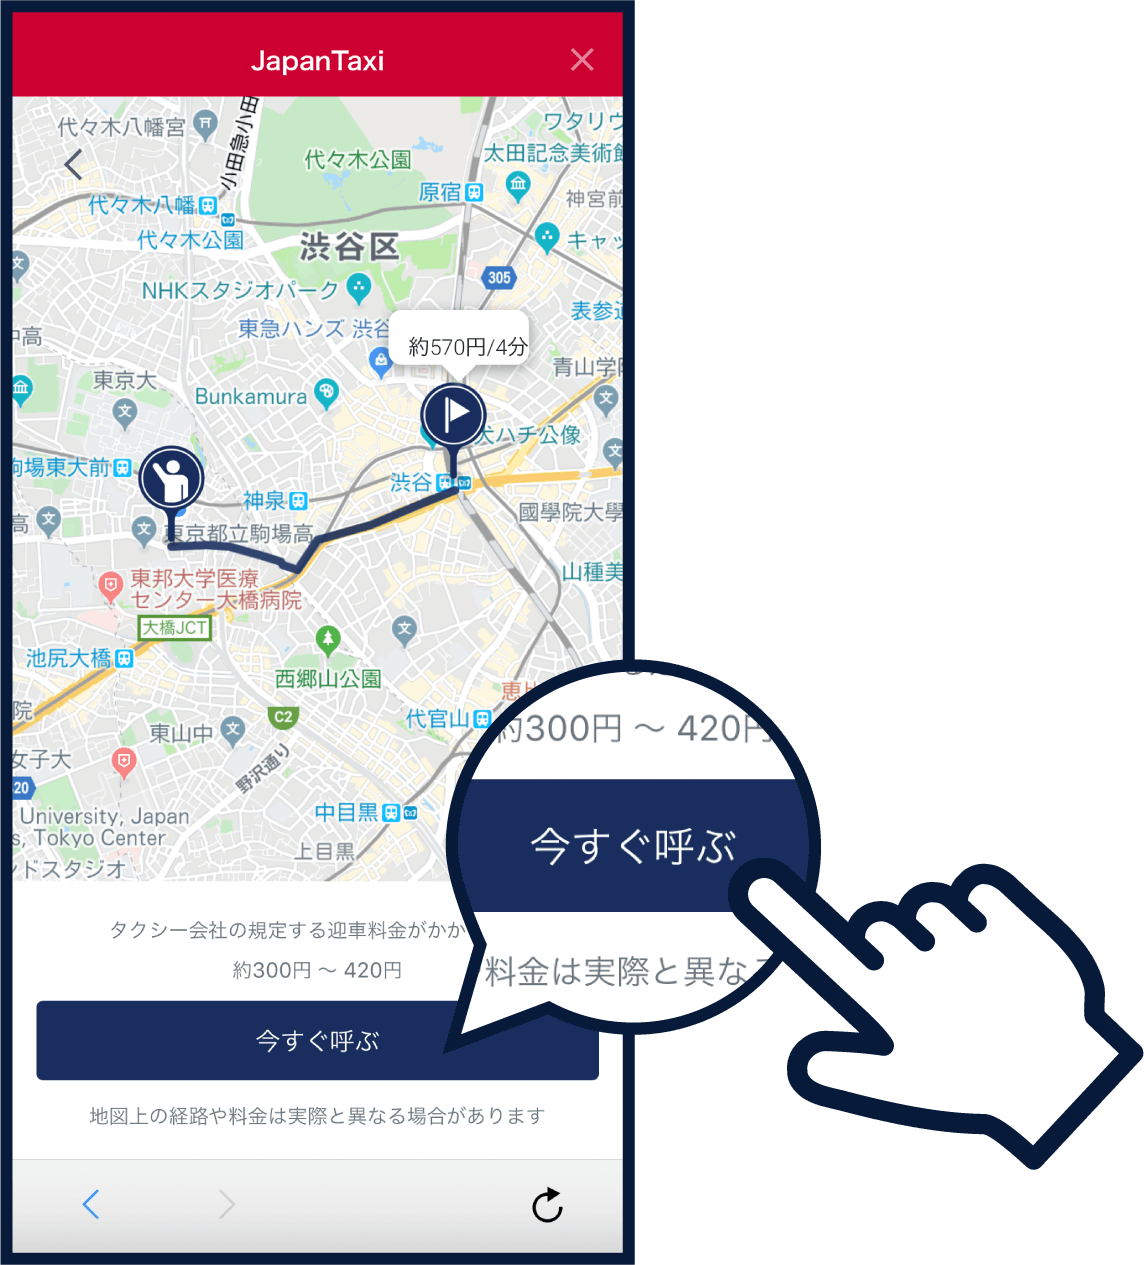 イラスト：d払いアプリ内のJapanTaxi画面で「今すぐ呼ぶ」をタップしようとしているところ